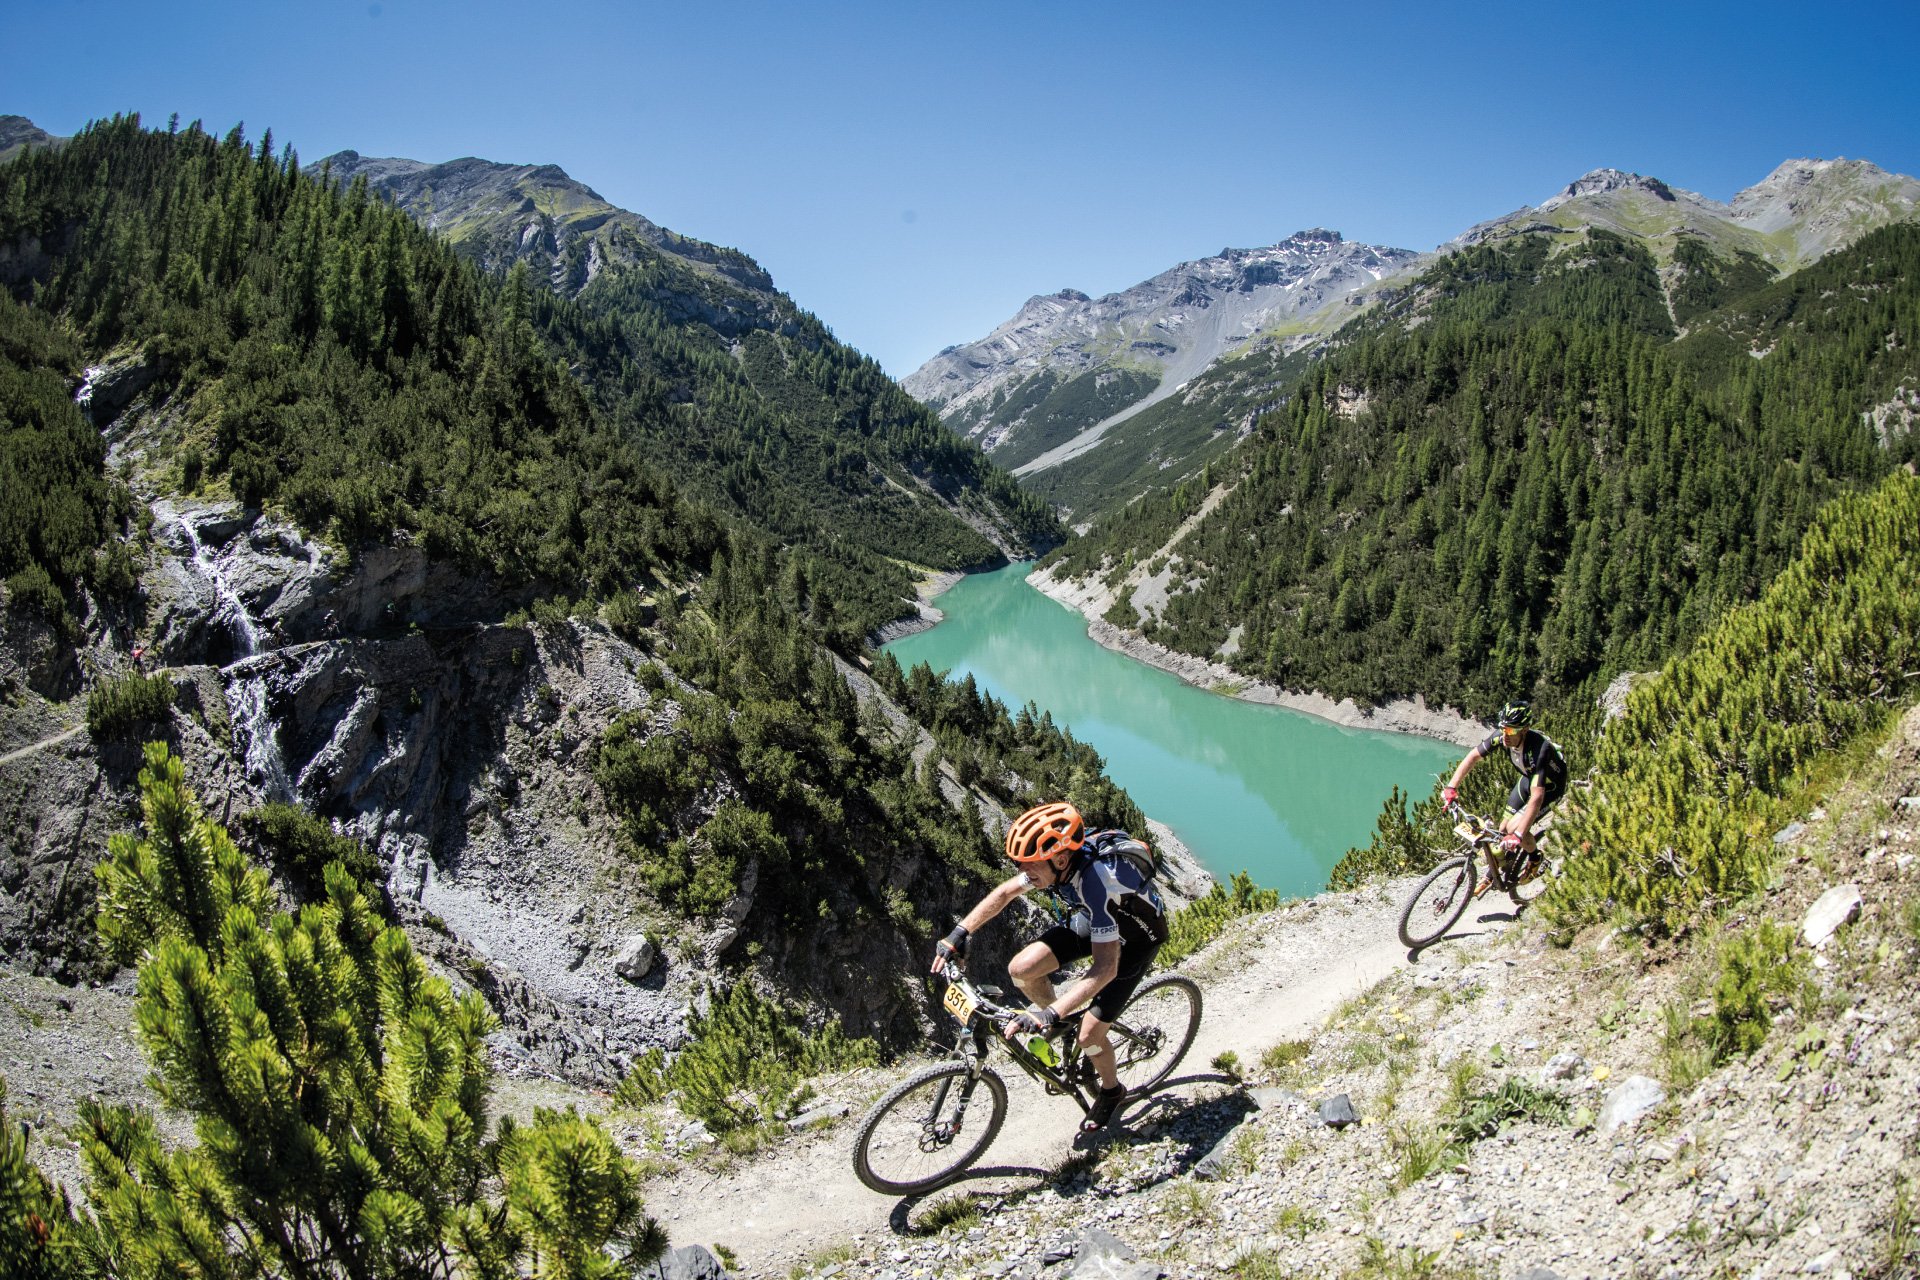 Merchandising geleidelijk Alstublieft Iconische mountainbikewedstrijden in de Alpen, een machtig decor